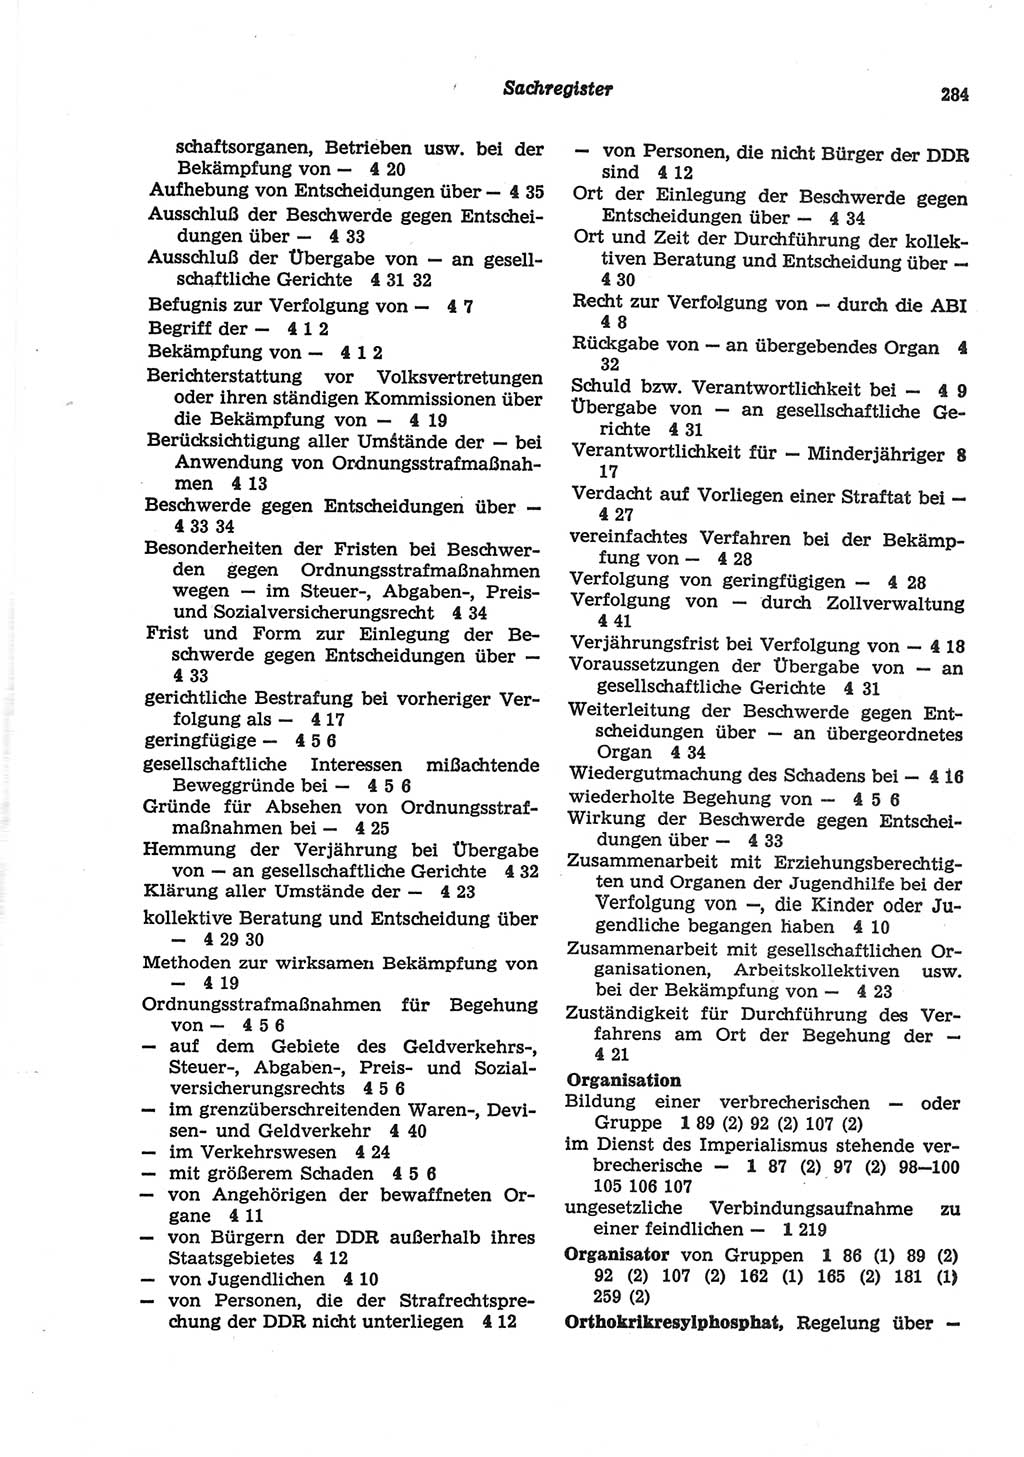 Strafgesetzbuch (StGB) der Deutschen Demokratischen Republik (DDR) und angrenzende Gesetze und Bestimmungen 1977, Seite 284 (StGB DDR Ges. Best. 1977, S. 284)